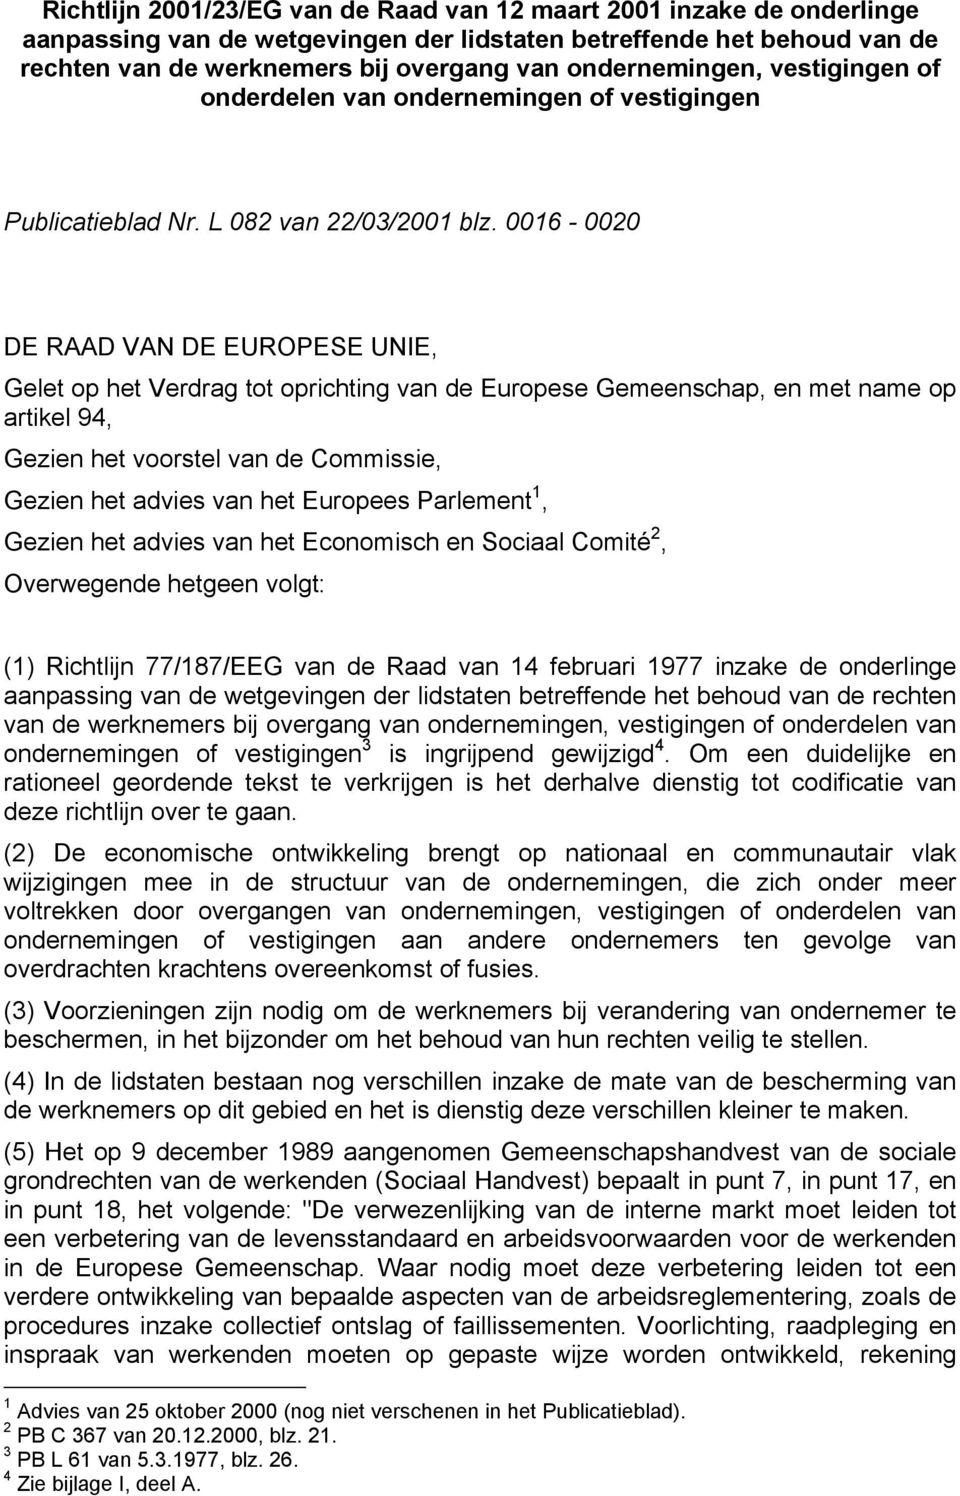 0016-0020 DE RAAD VAN DE EUROPESE UNIE, Gelet op het Verdrag tot oprichting van de Europese Gemeenschap, en met name op artikel 94, Gezien het voorstel van de Commissie, Gezien het advies van het